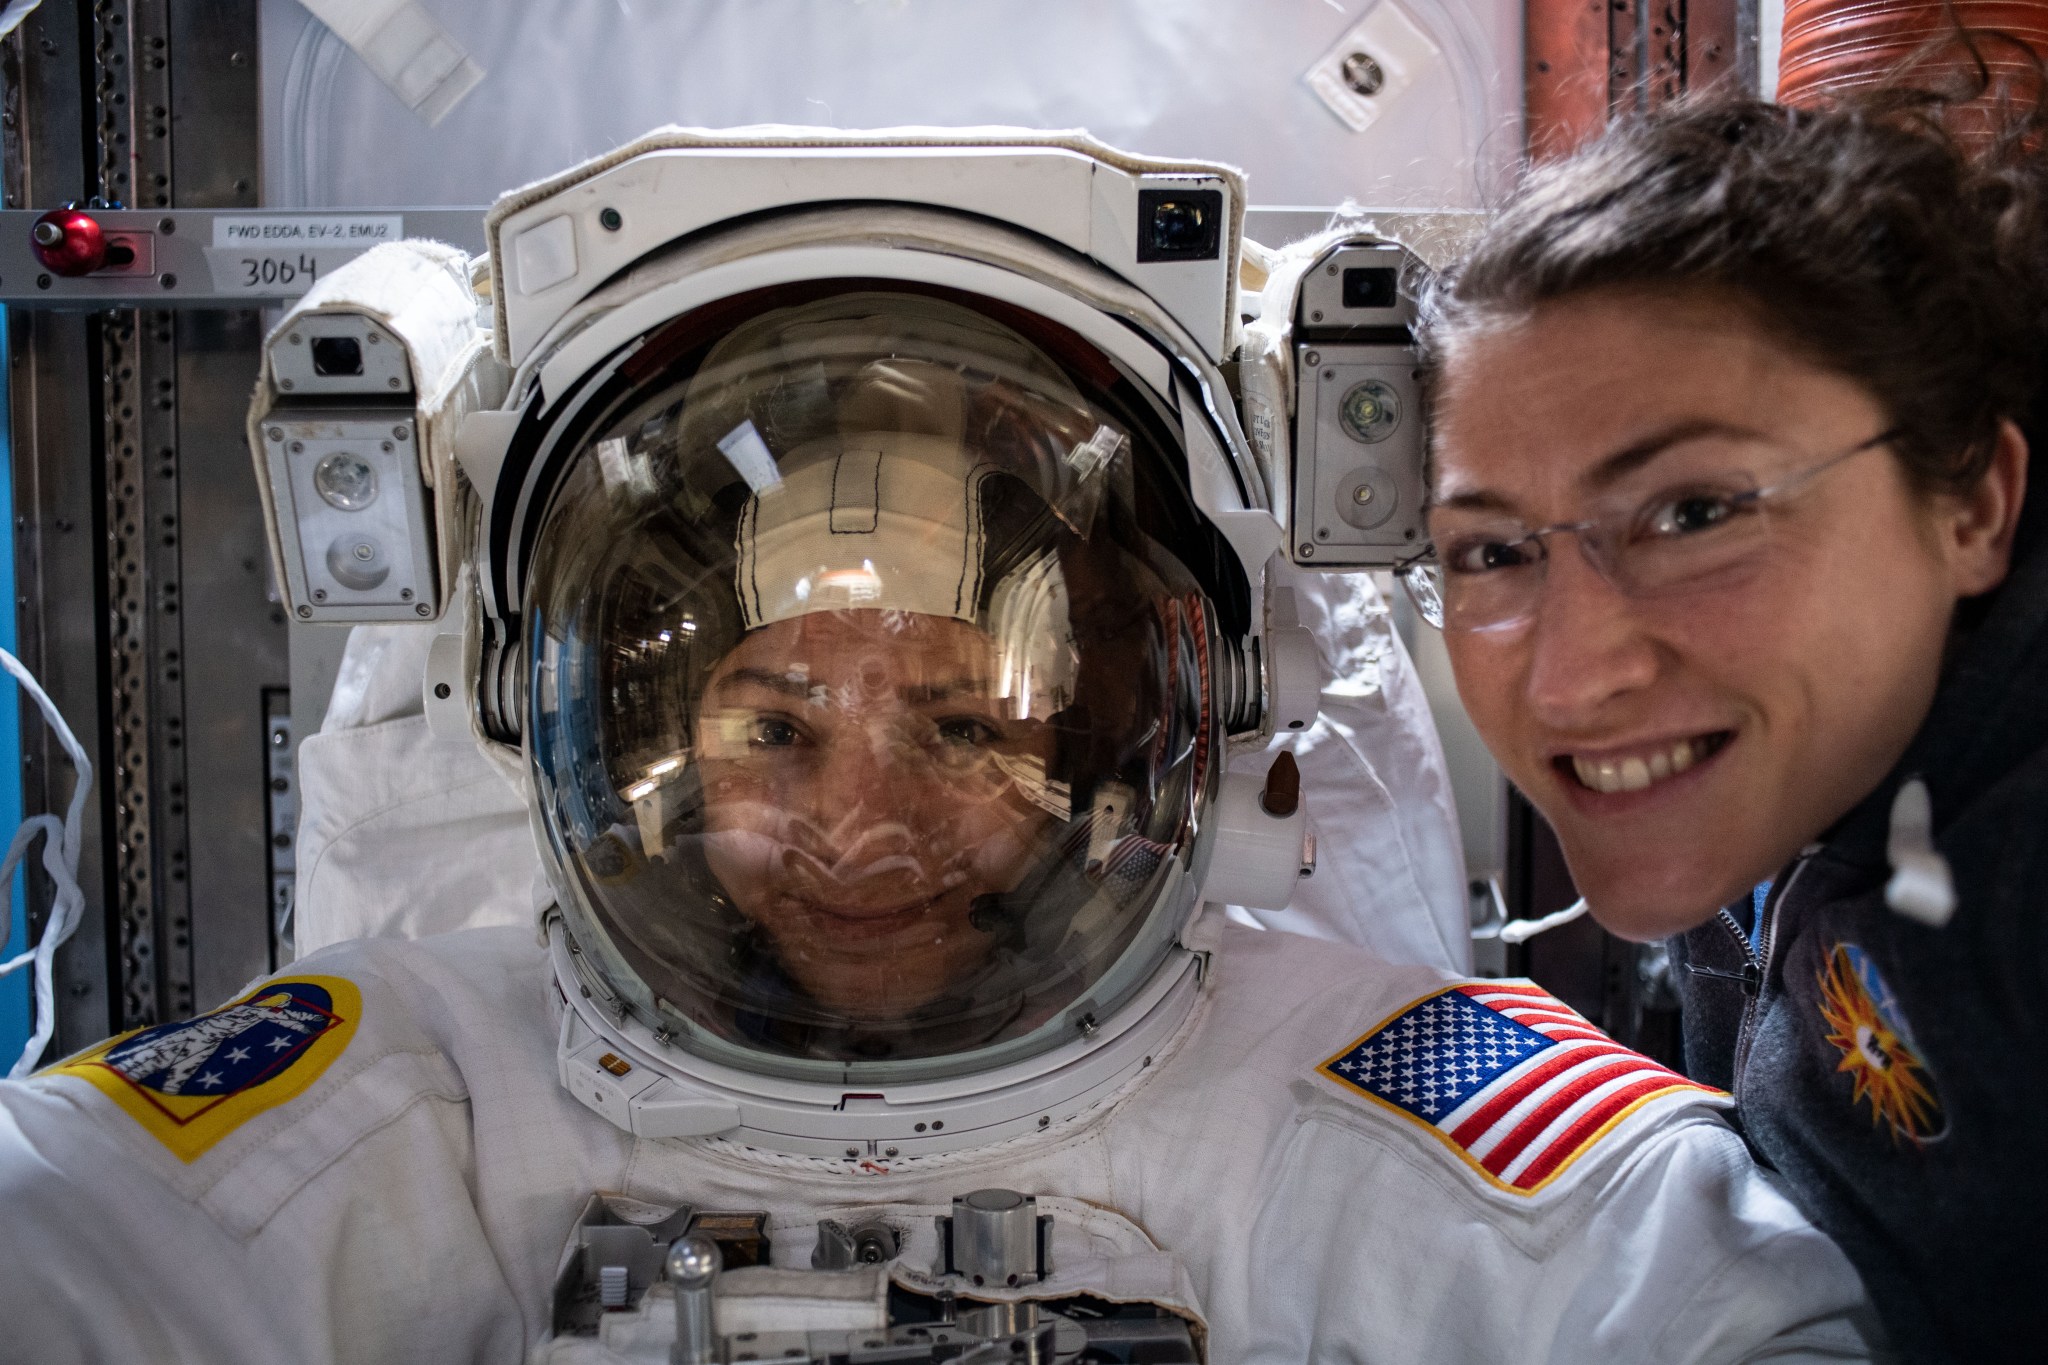 NASA astronauts Christina Koch and Jessica Meir prepare for a spacewalk